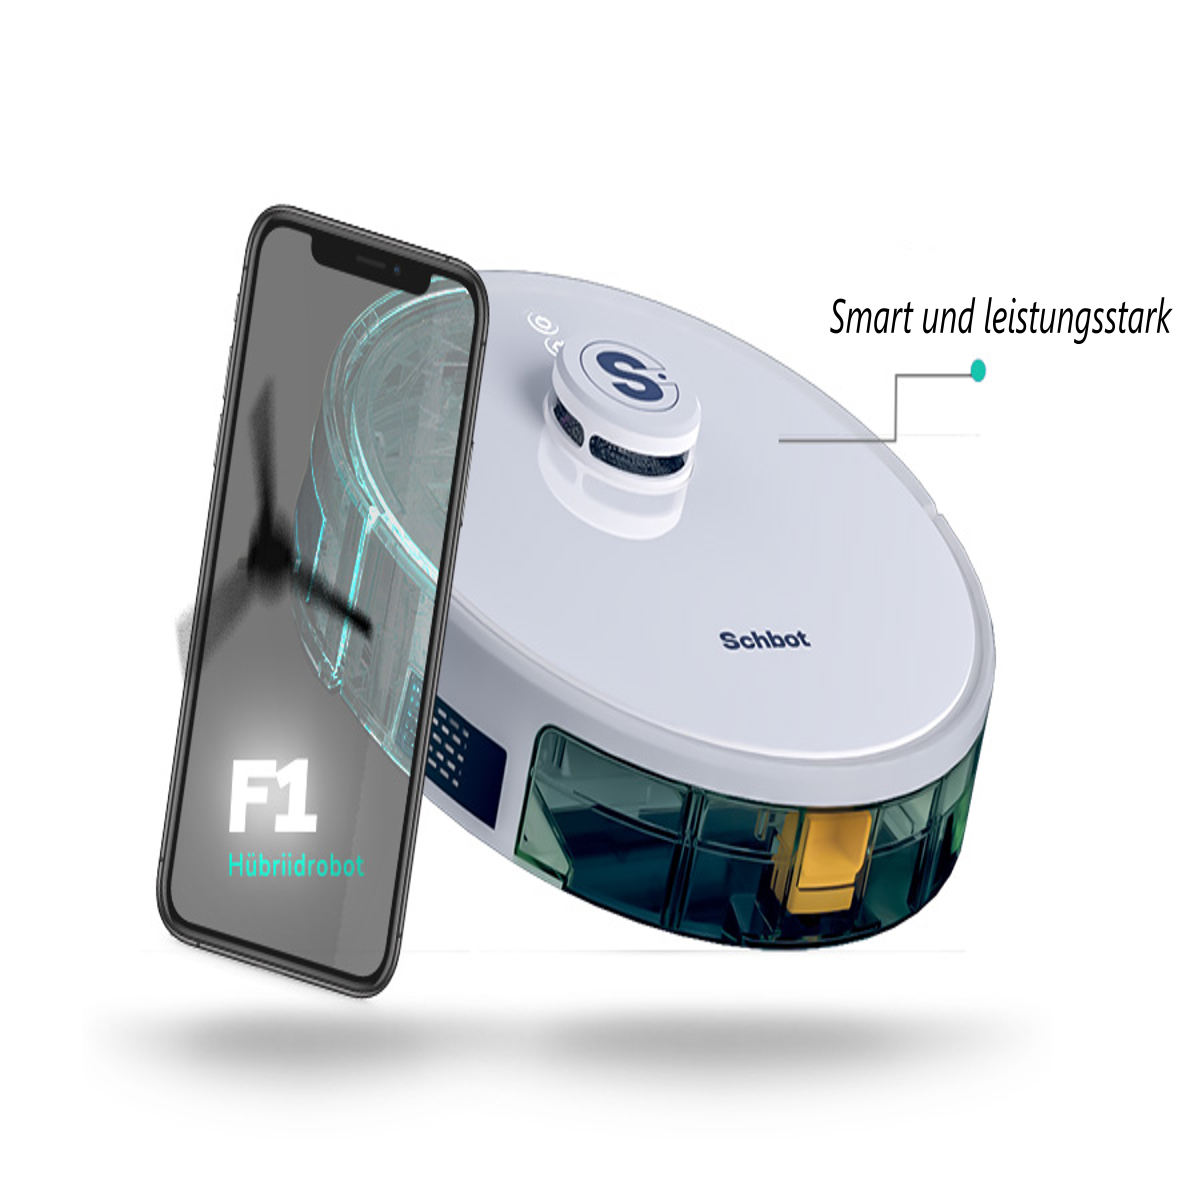 SCHBOT F1-Weiß mit App Roboterstaubsauger und Wischfunktion Saugroboter connection